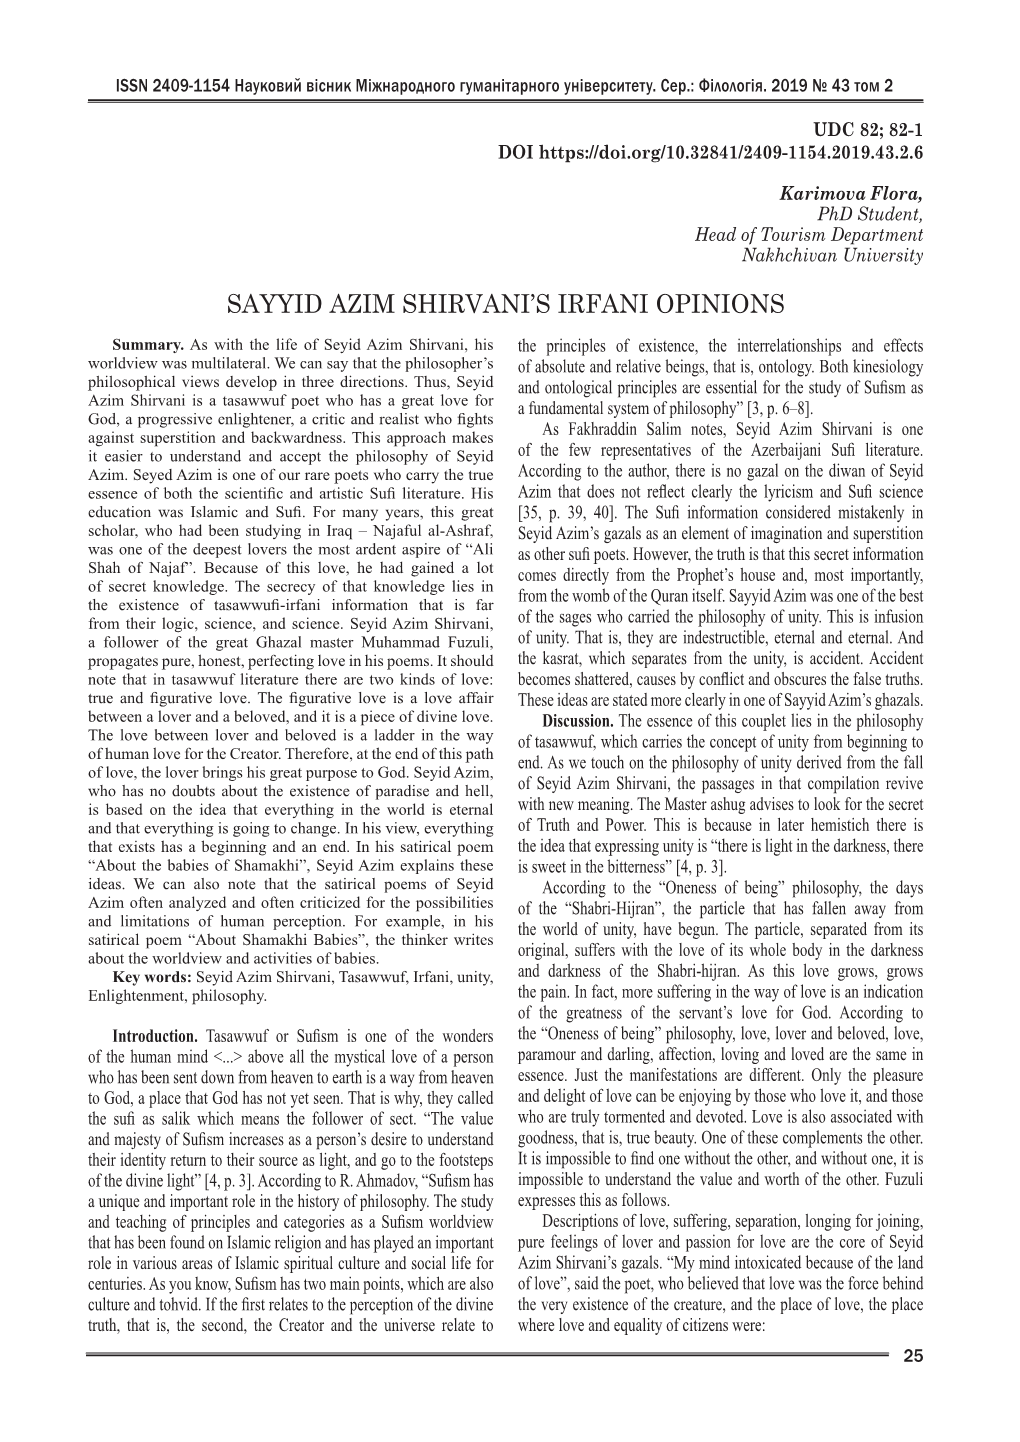 Sayyid Azim Shirvani's Irfani Opinions